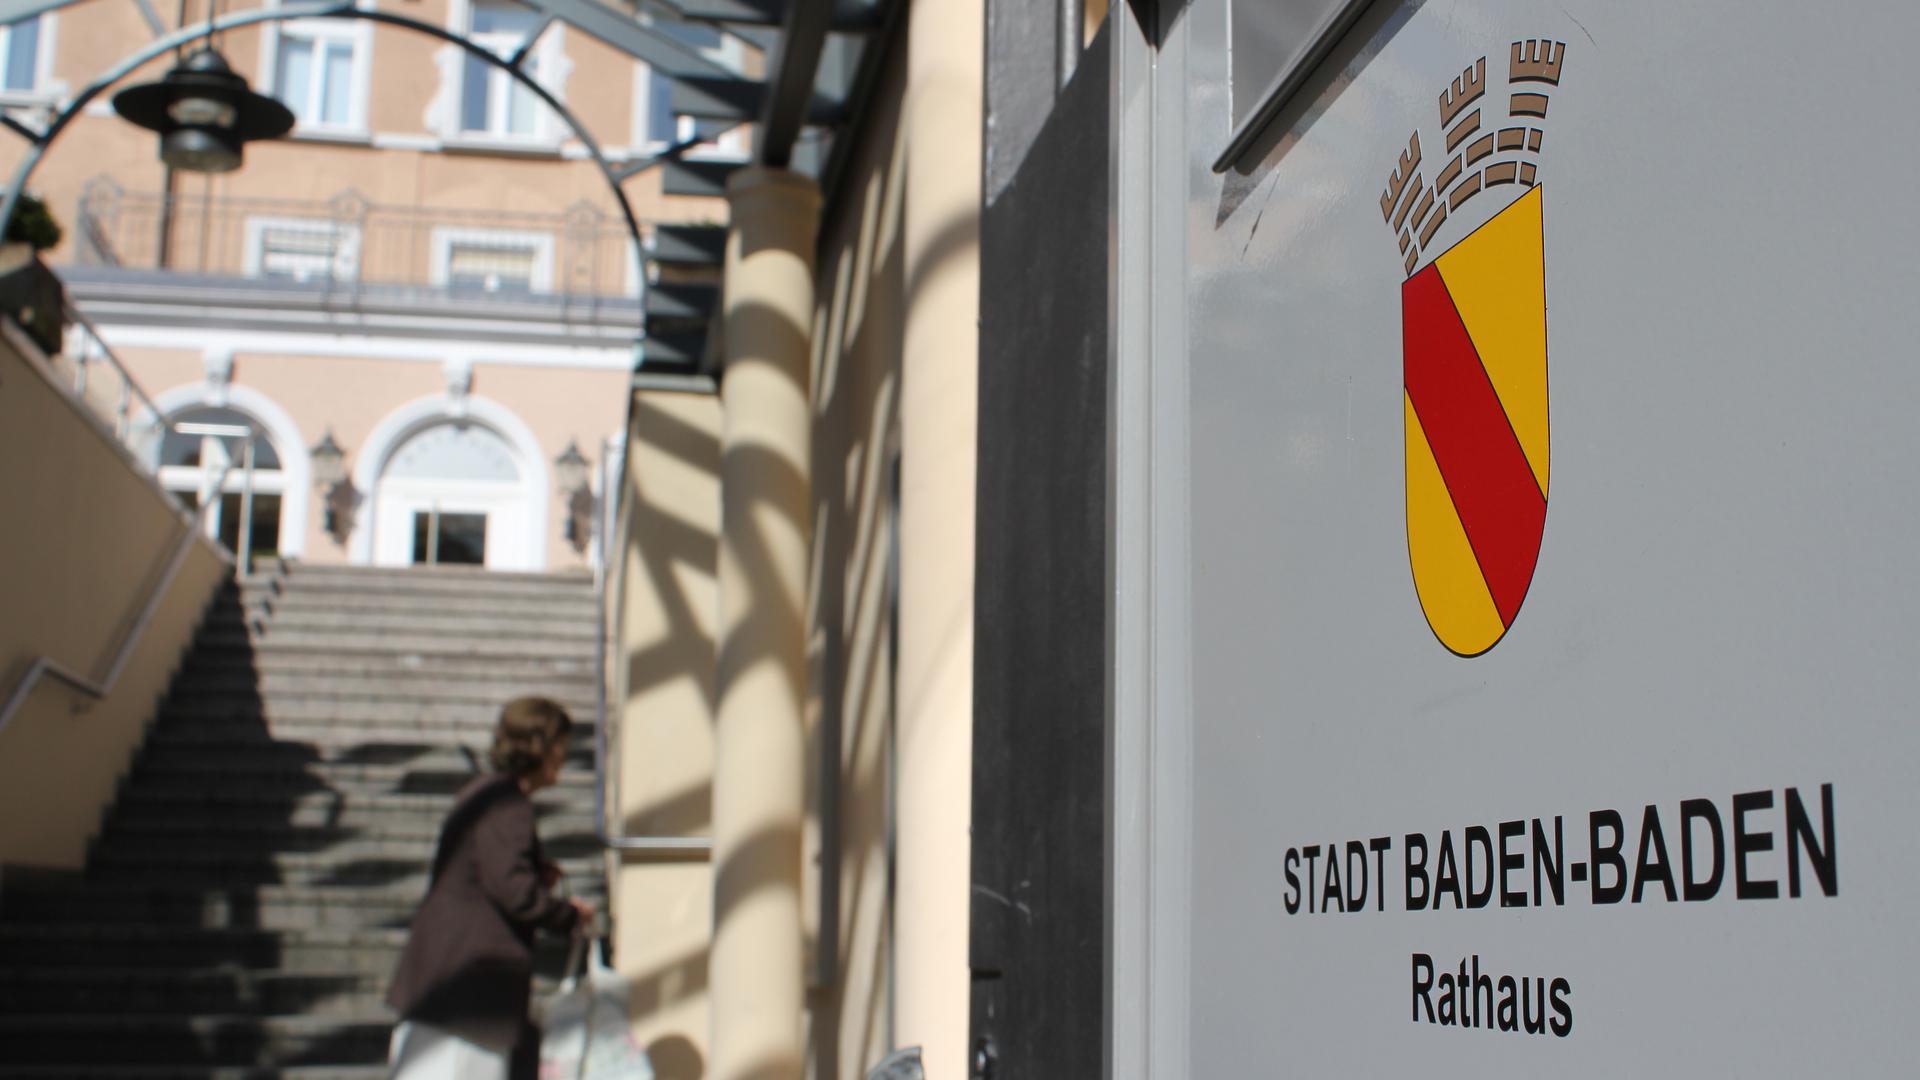 Wer bei der OB-Wahl in Baden-Baden antreten darf, steht jetzt fest. Insgesamt sind acht Bewerber zugelassen.